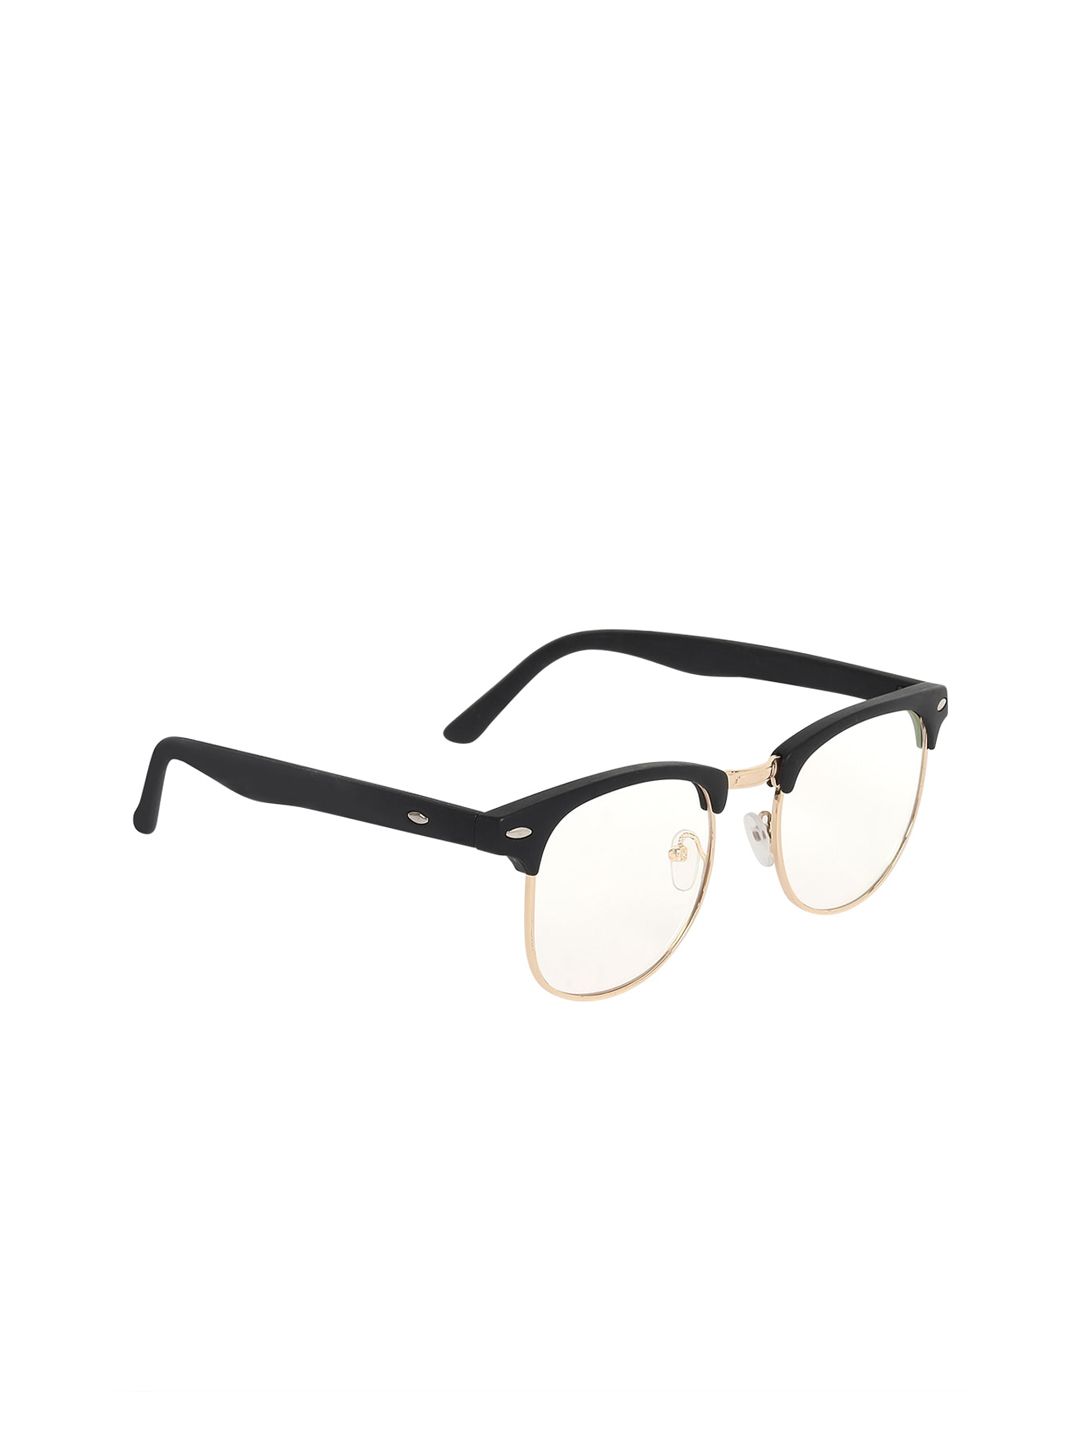 ALIGATORR Unisex UV Protected Lens UV400 Browline Sunglasses ALI_CLUBMASTER_001 Price in India